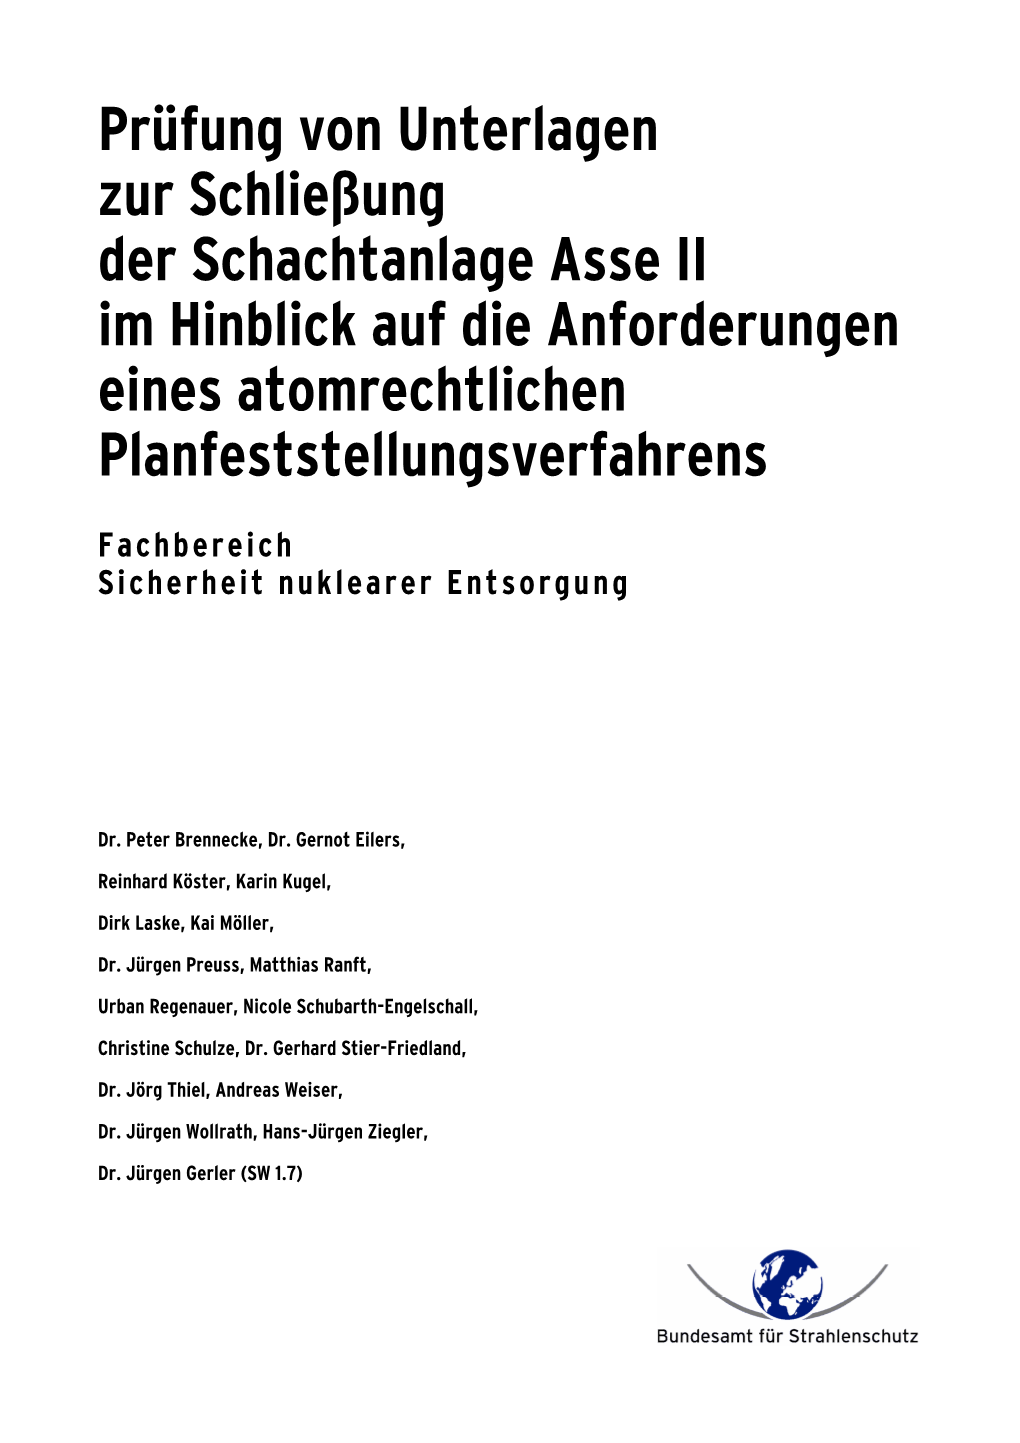 Prüfung Von Unterlagen Zur Schließung Der Schachtanlage Asse II Im Hinblick Auf Die Anforderungen Eines Atomrechtlichen Planfeststellungsverfahrens